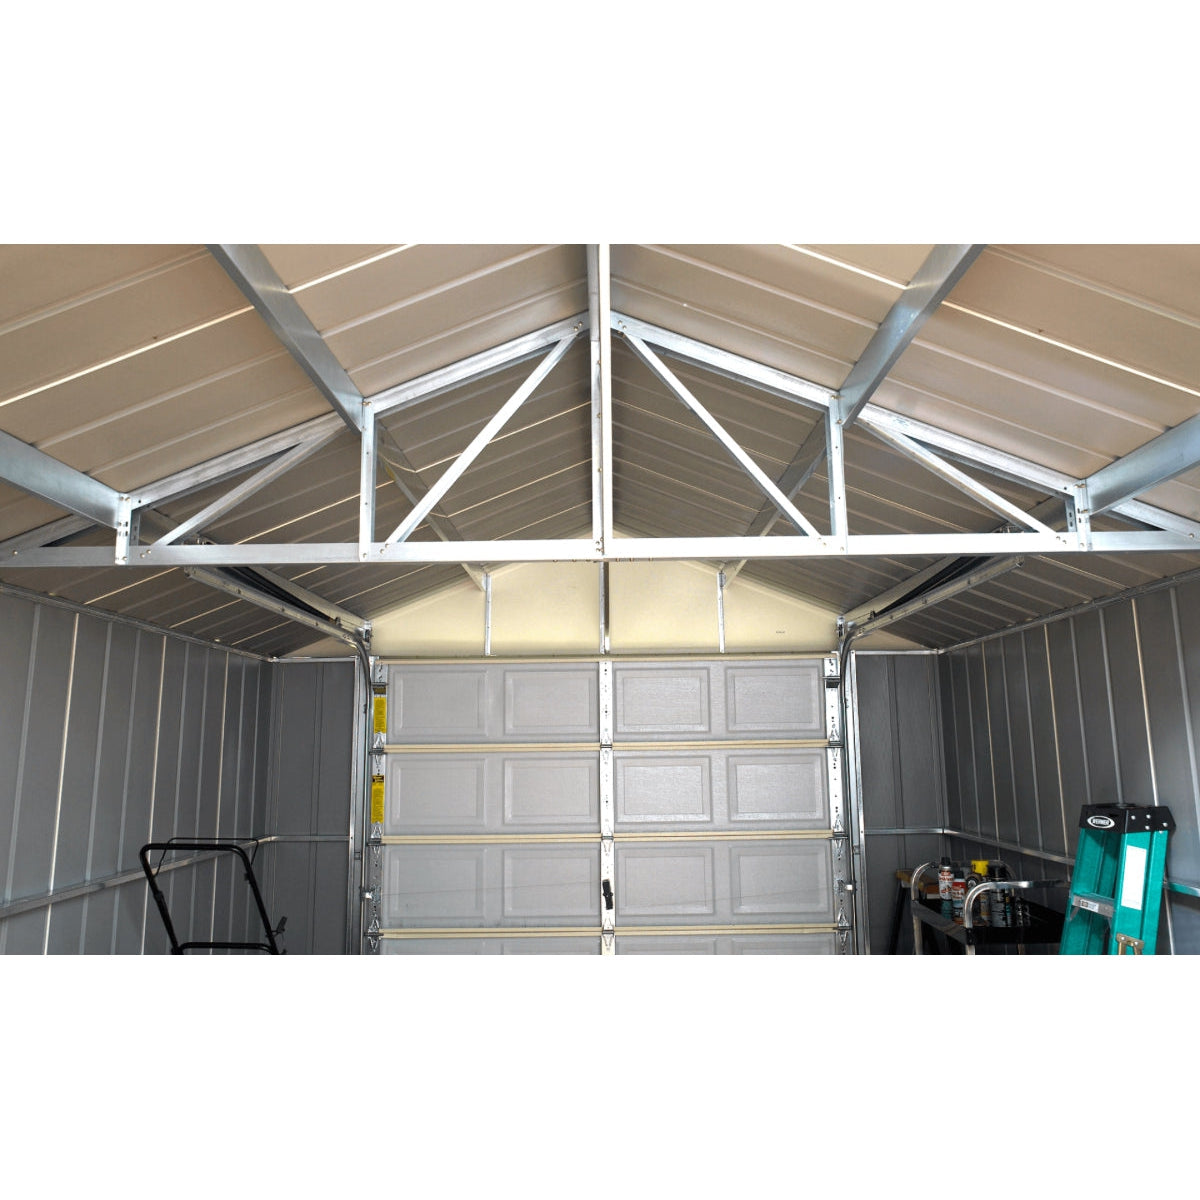 Arrow Murryhill Steel Garage Shed 12 x 31 ft.-Delightful Yard